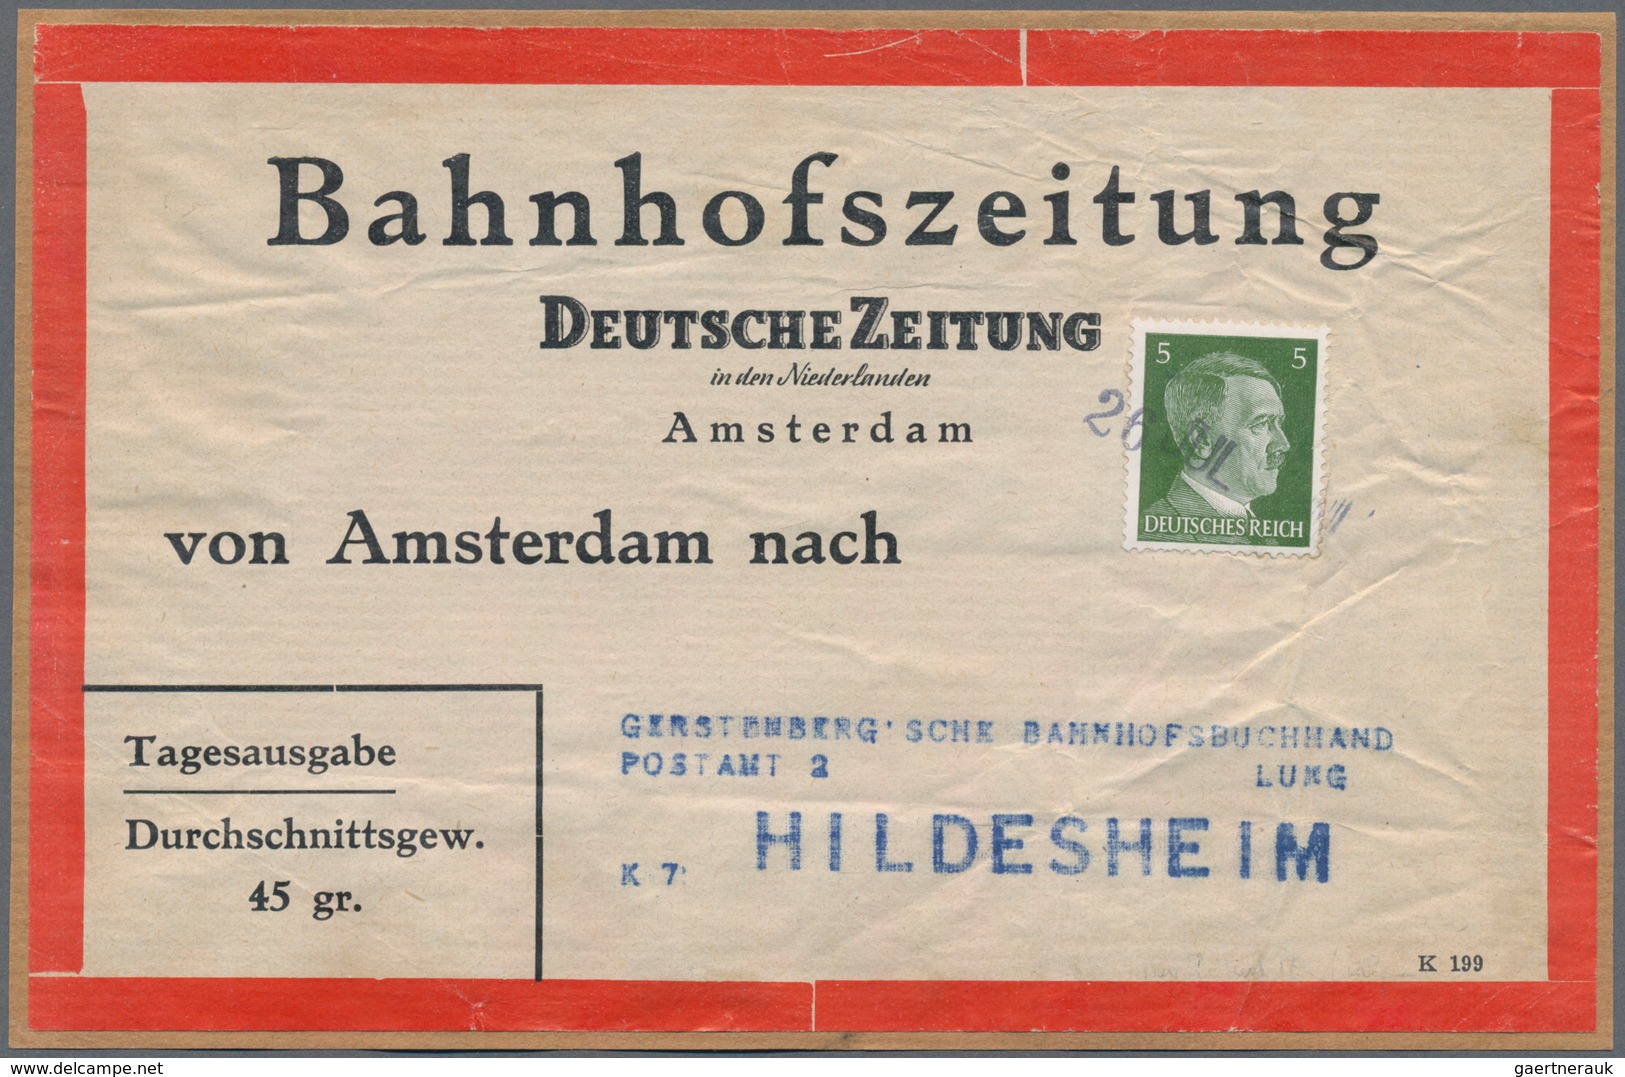 Deutschland: 1860-1945, Partie mit mehreren Teilsammlungen ab Altdeutschland, dabei auch viele Brief